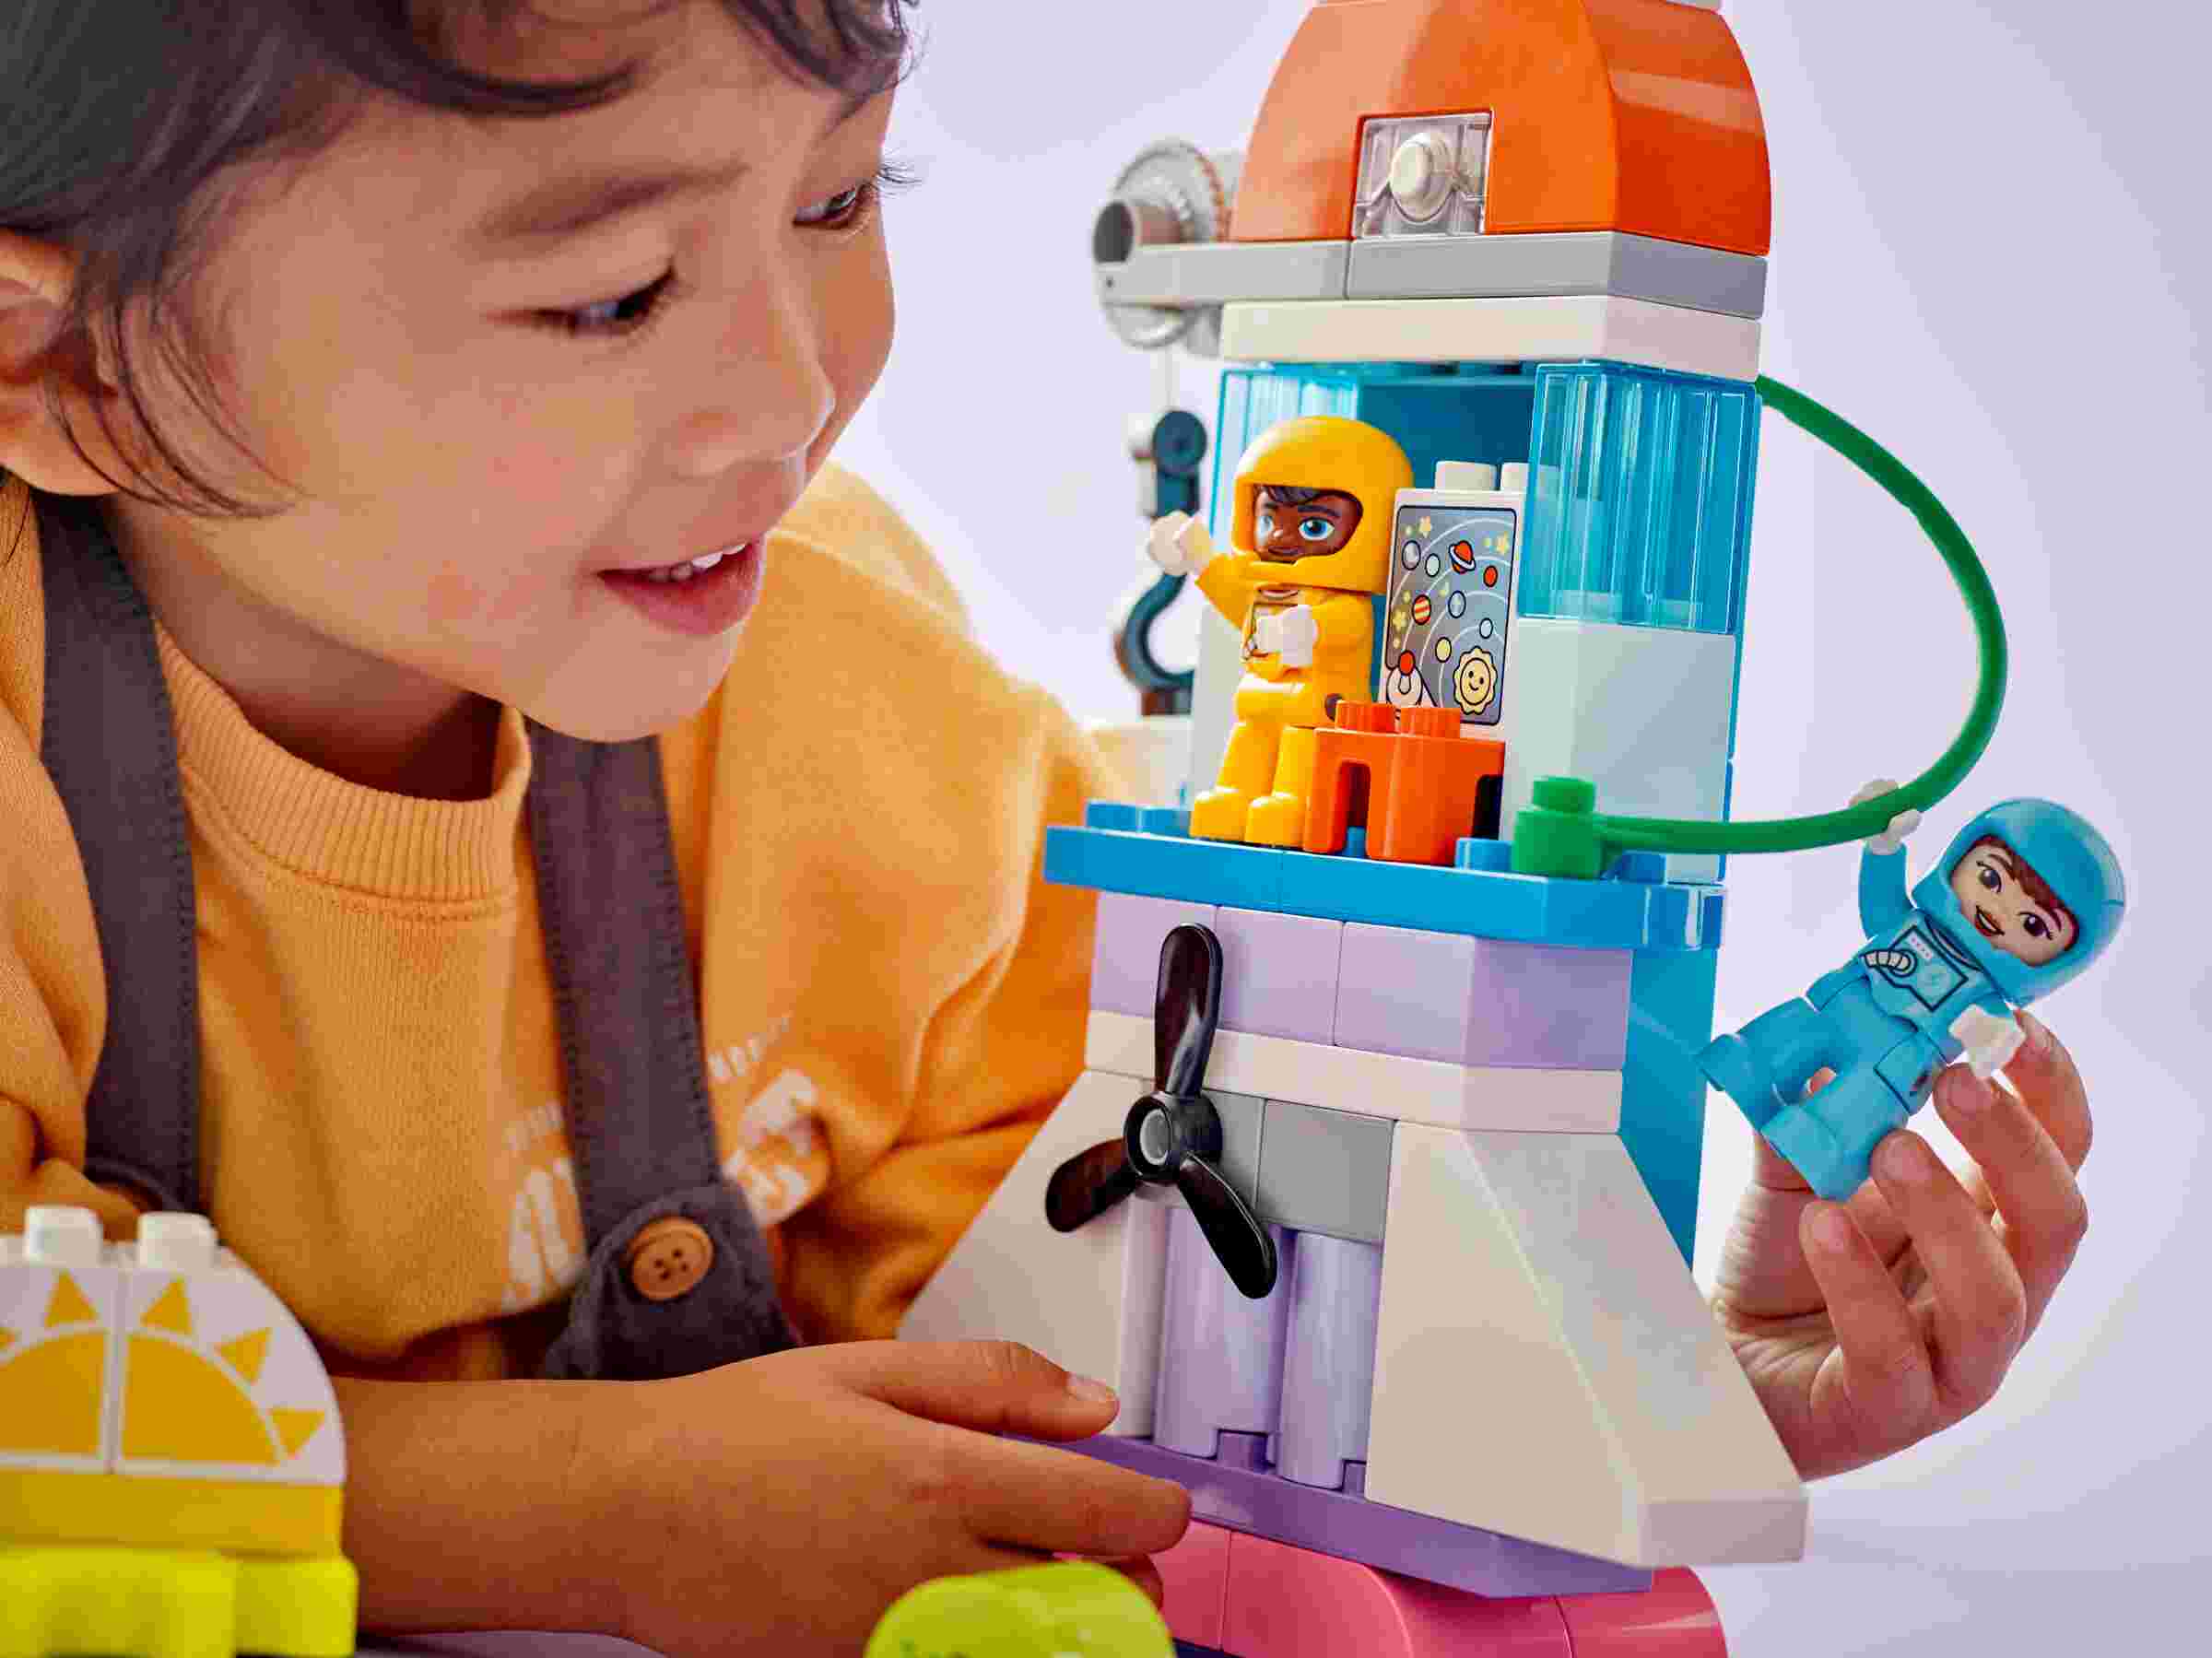 LEGO 10422 DUPLO 3-in-1-Spaceshuttle für viele Abenteuer, 2 Astronautenfiguren